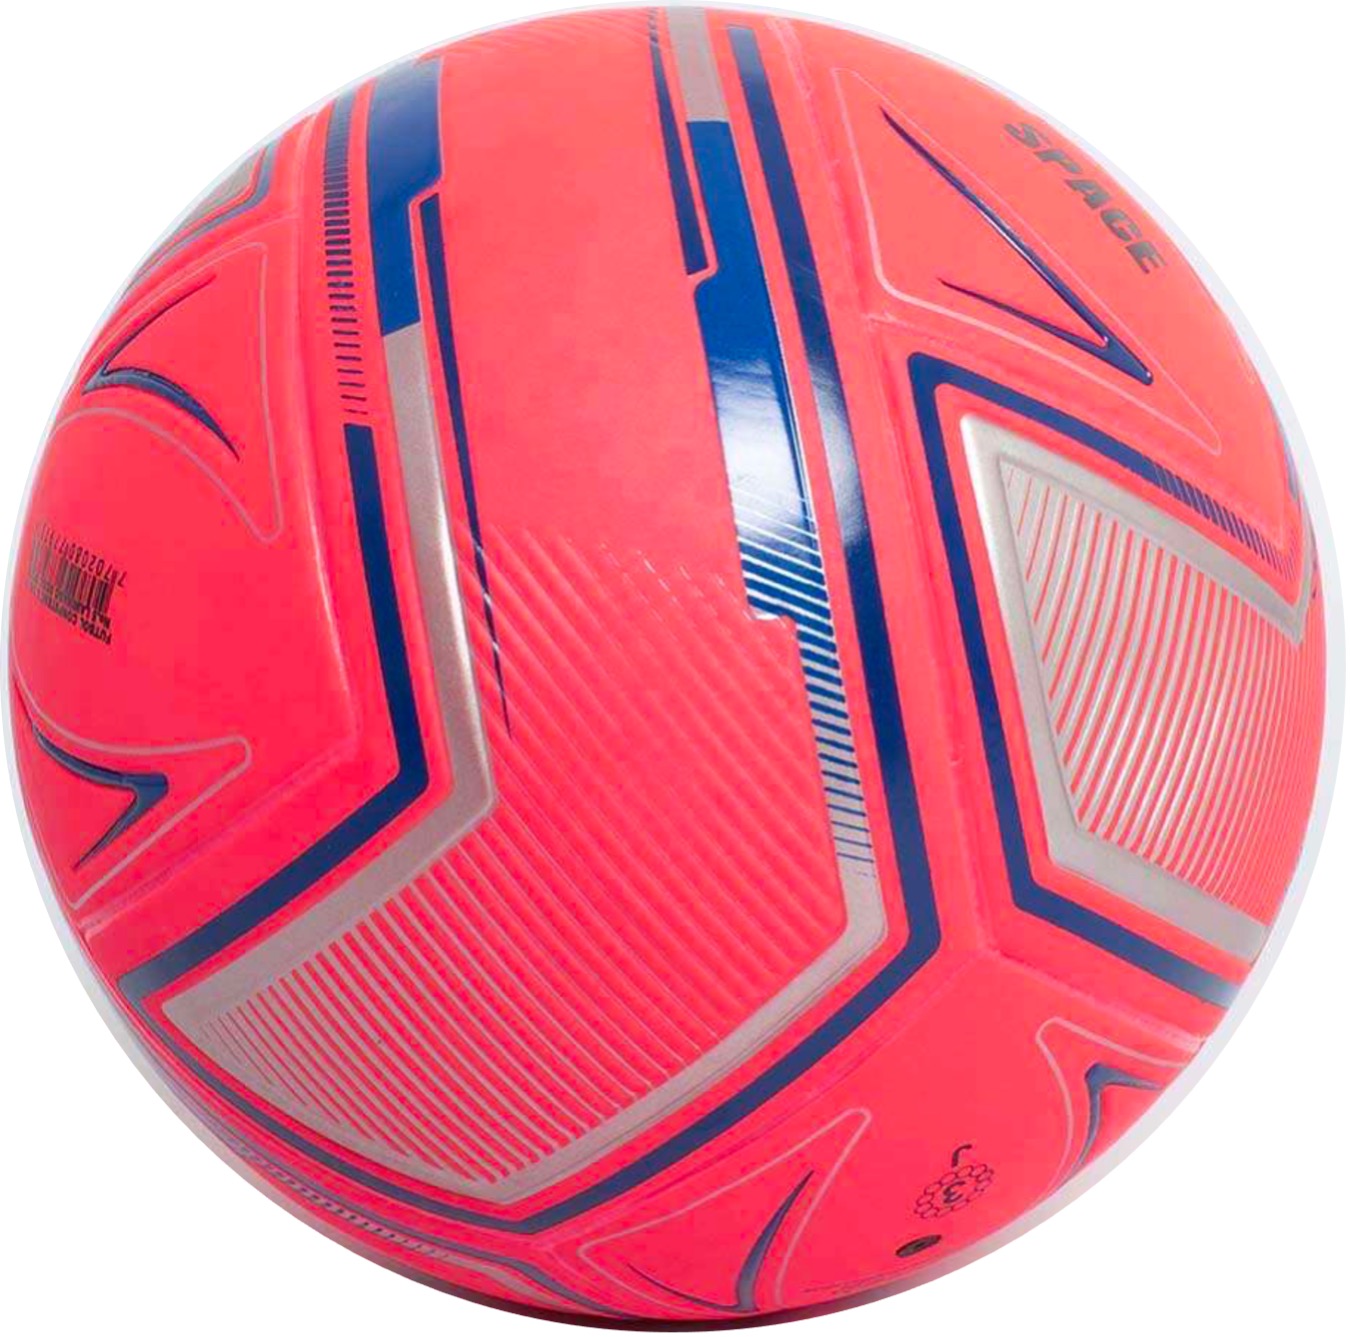 Balón de Futbol Sala Golty Space - PVC - Todo Terreno